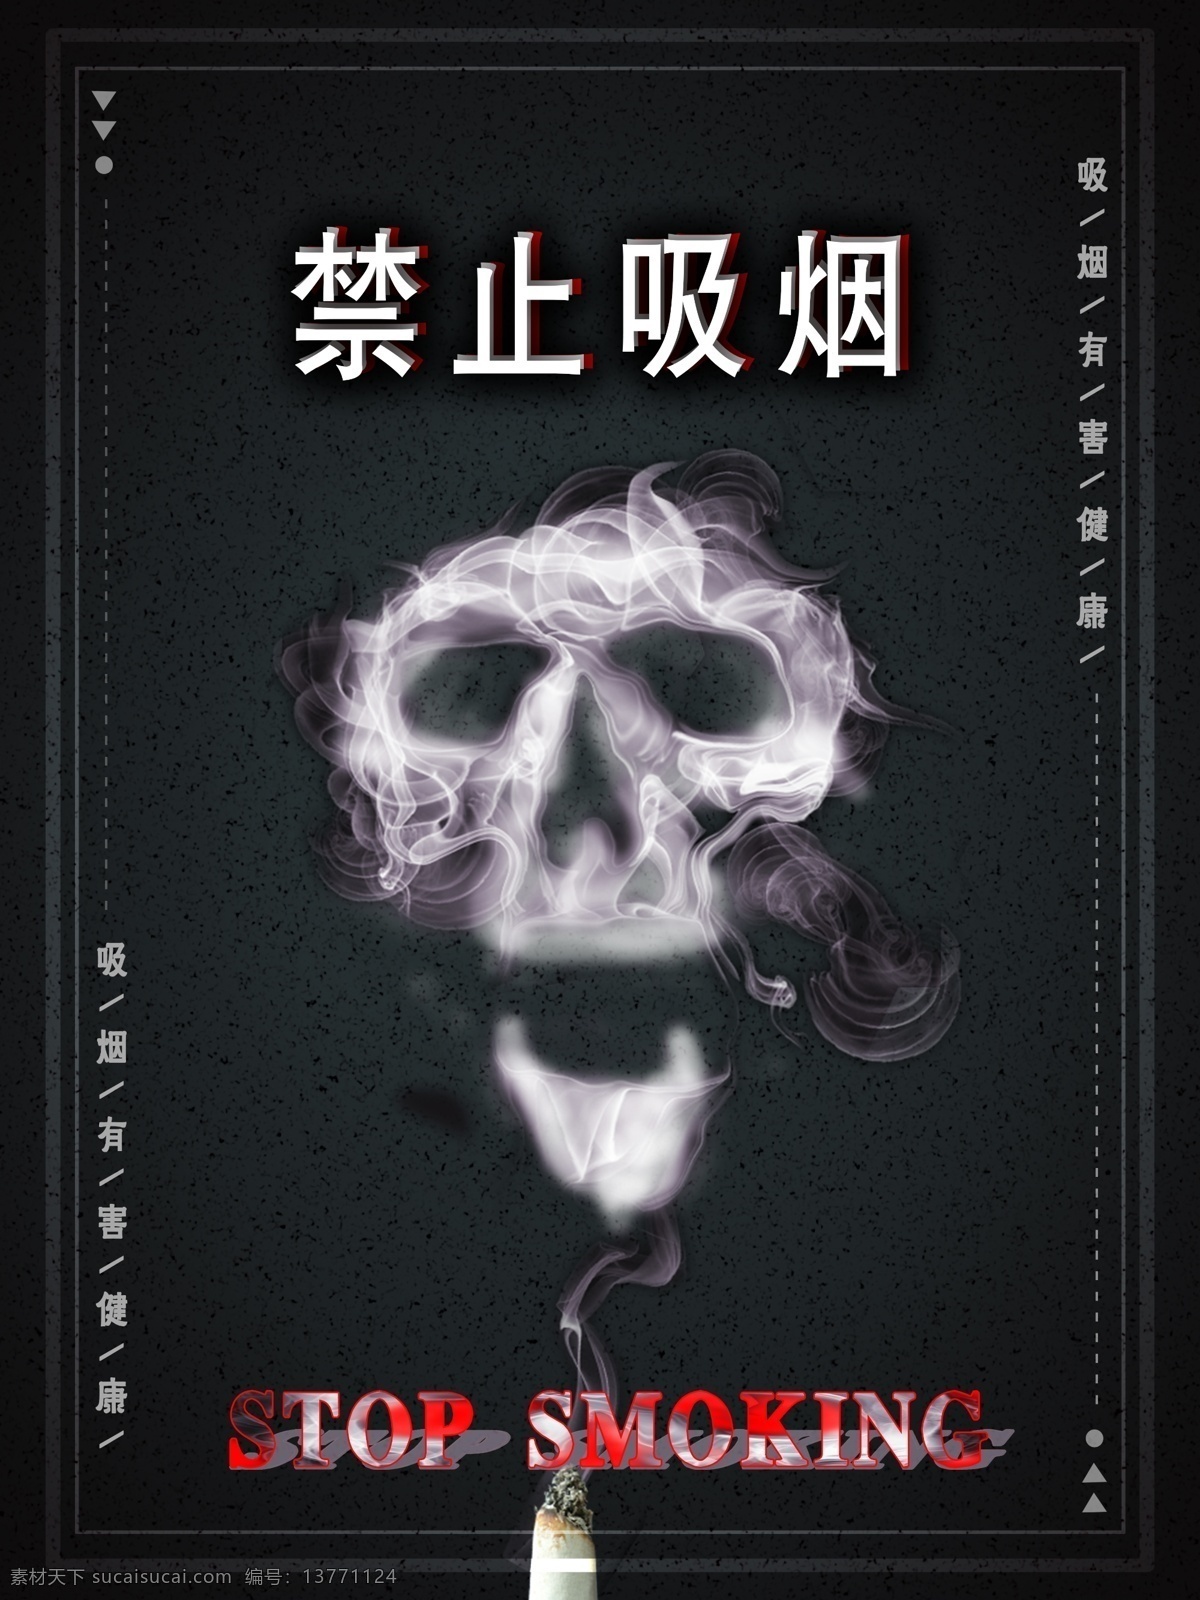 原创 禁烟 简单 醒目 公益 海报 黑色 烟 禁止吸烟 边框 红色 骷髅头 白色 点阵 三角